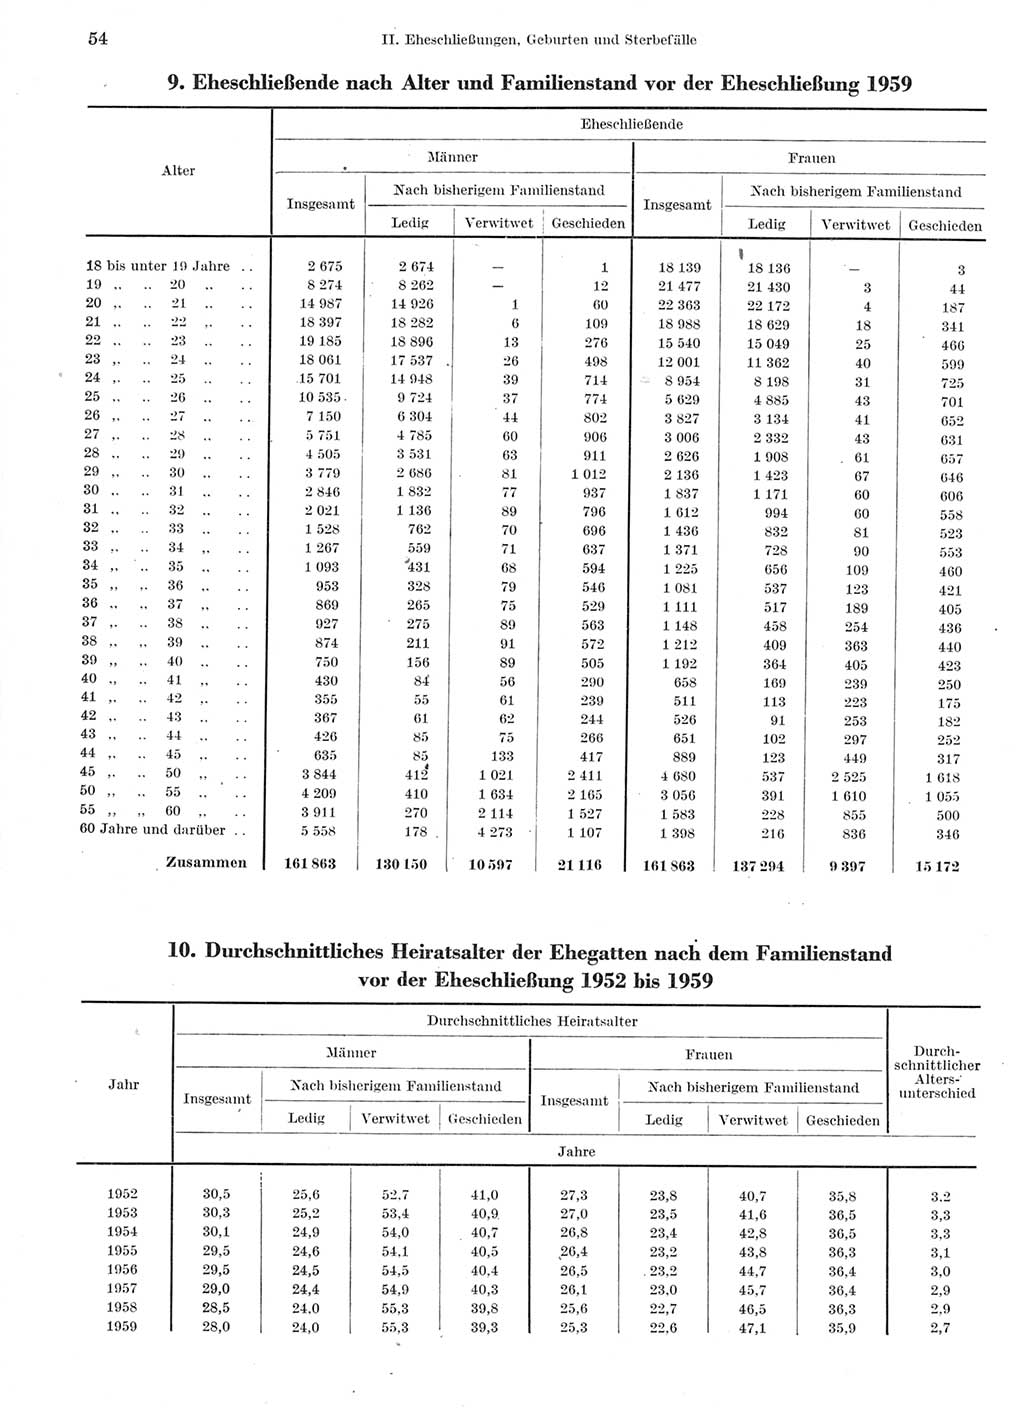 Statistisches Jahrbuch der Deutschen Demokratischen Republik (DDR) 1960-1961, Seite 54 (Stat. Jb. DDR 1960-1961, S. 54)